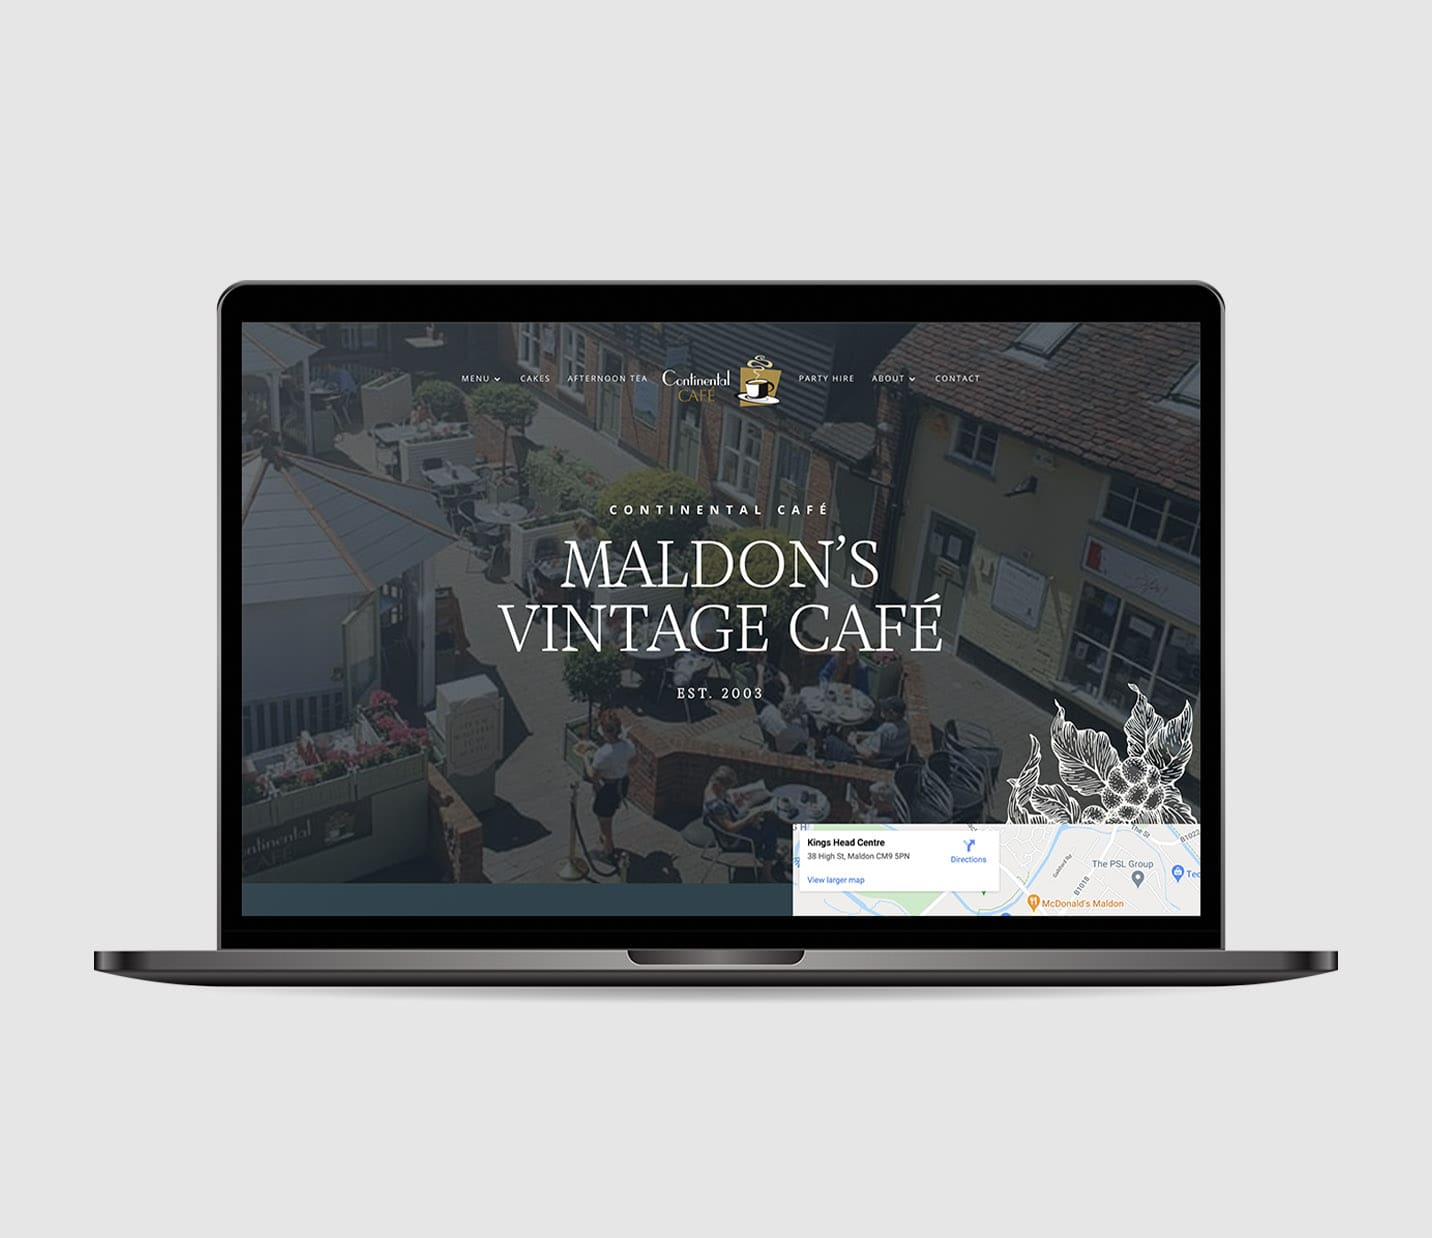 Madonna's vintage cafe website designed by a freelance web designer in Essex.